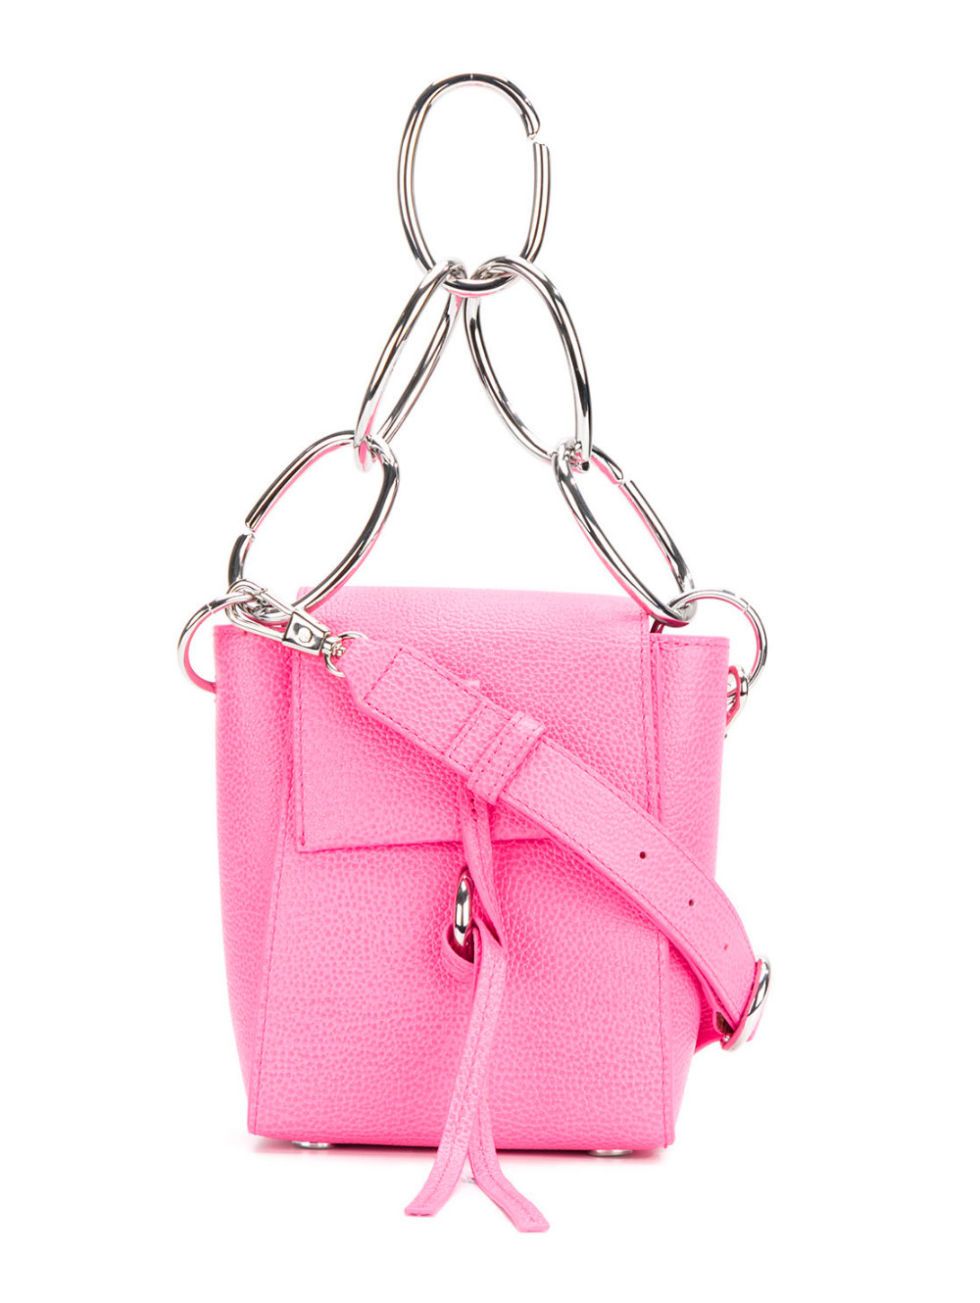 Handbag, Bag, Pink, Shoulder bag, Fashion accessory, Leather, Magenta, Satchel, Material property, Strap, 